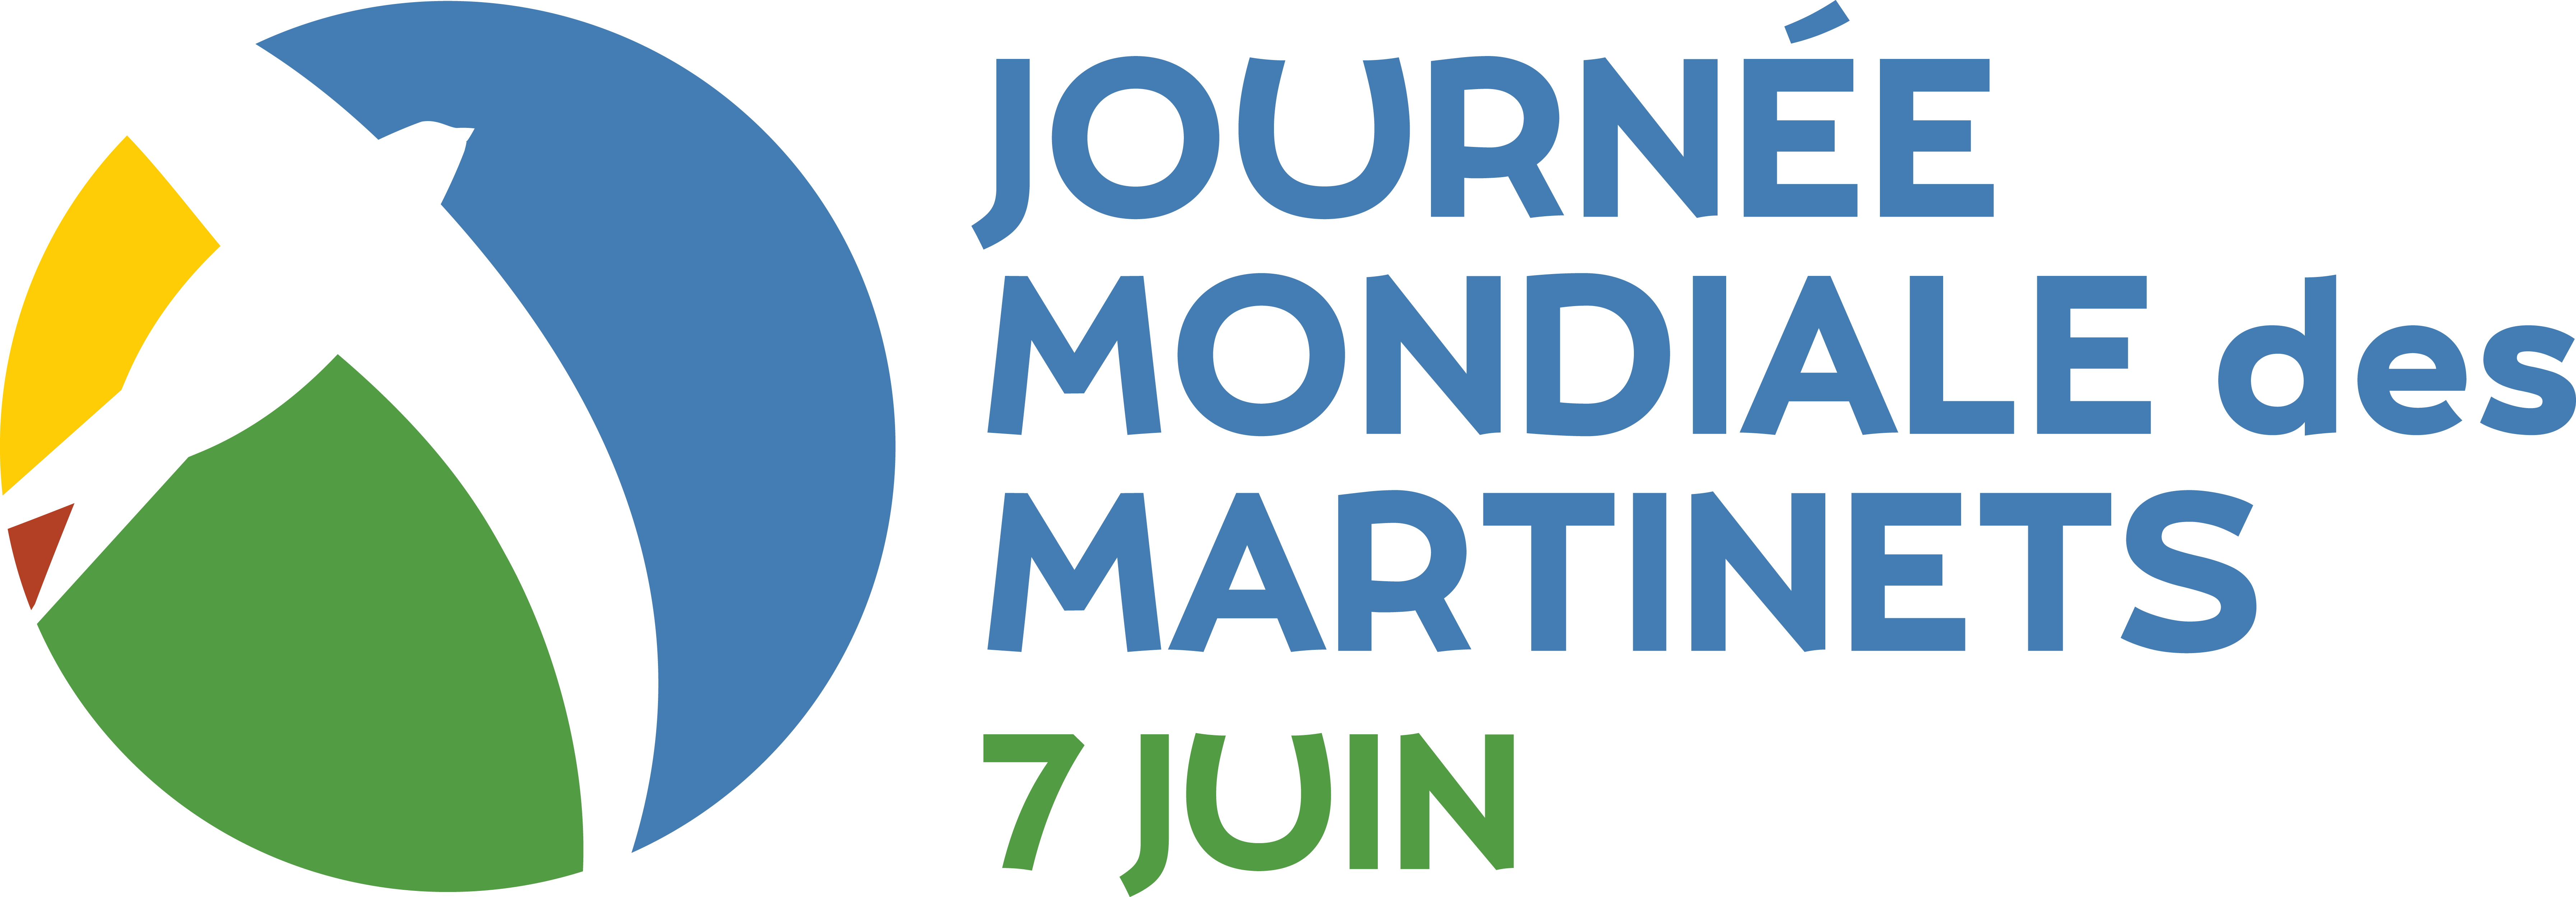 Le 7 juin, Journée mondiale des martinets - Jane Goodall Institute France